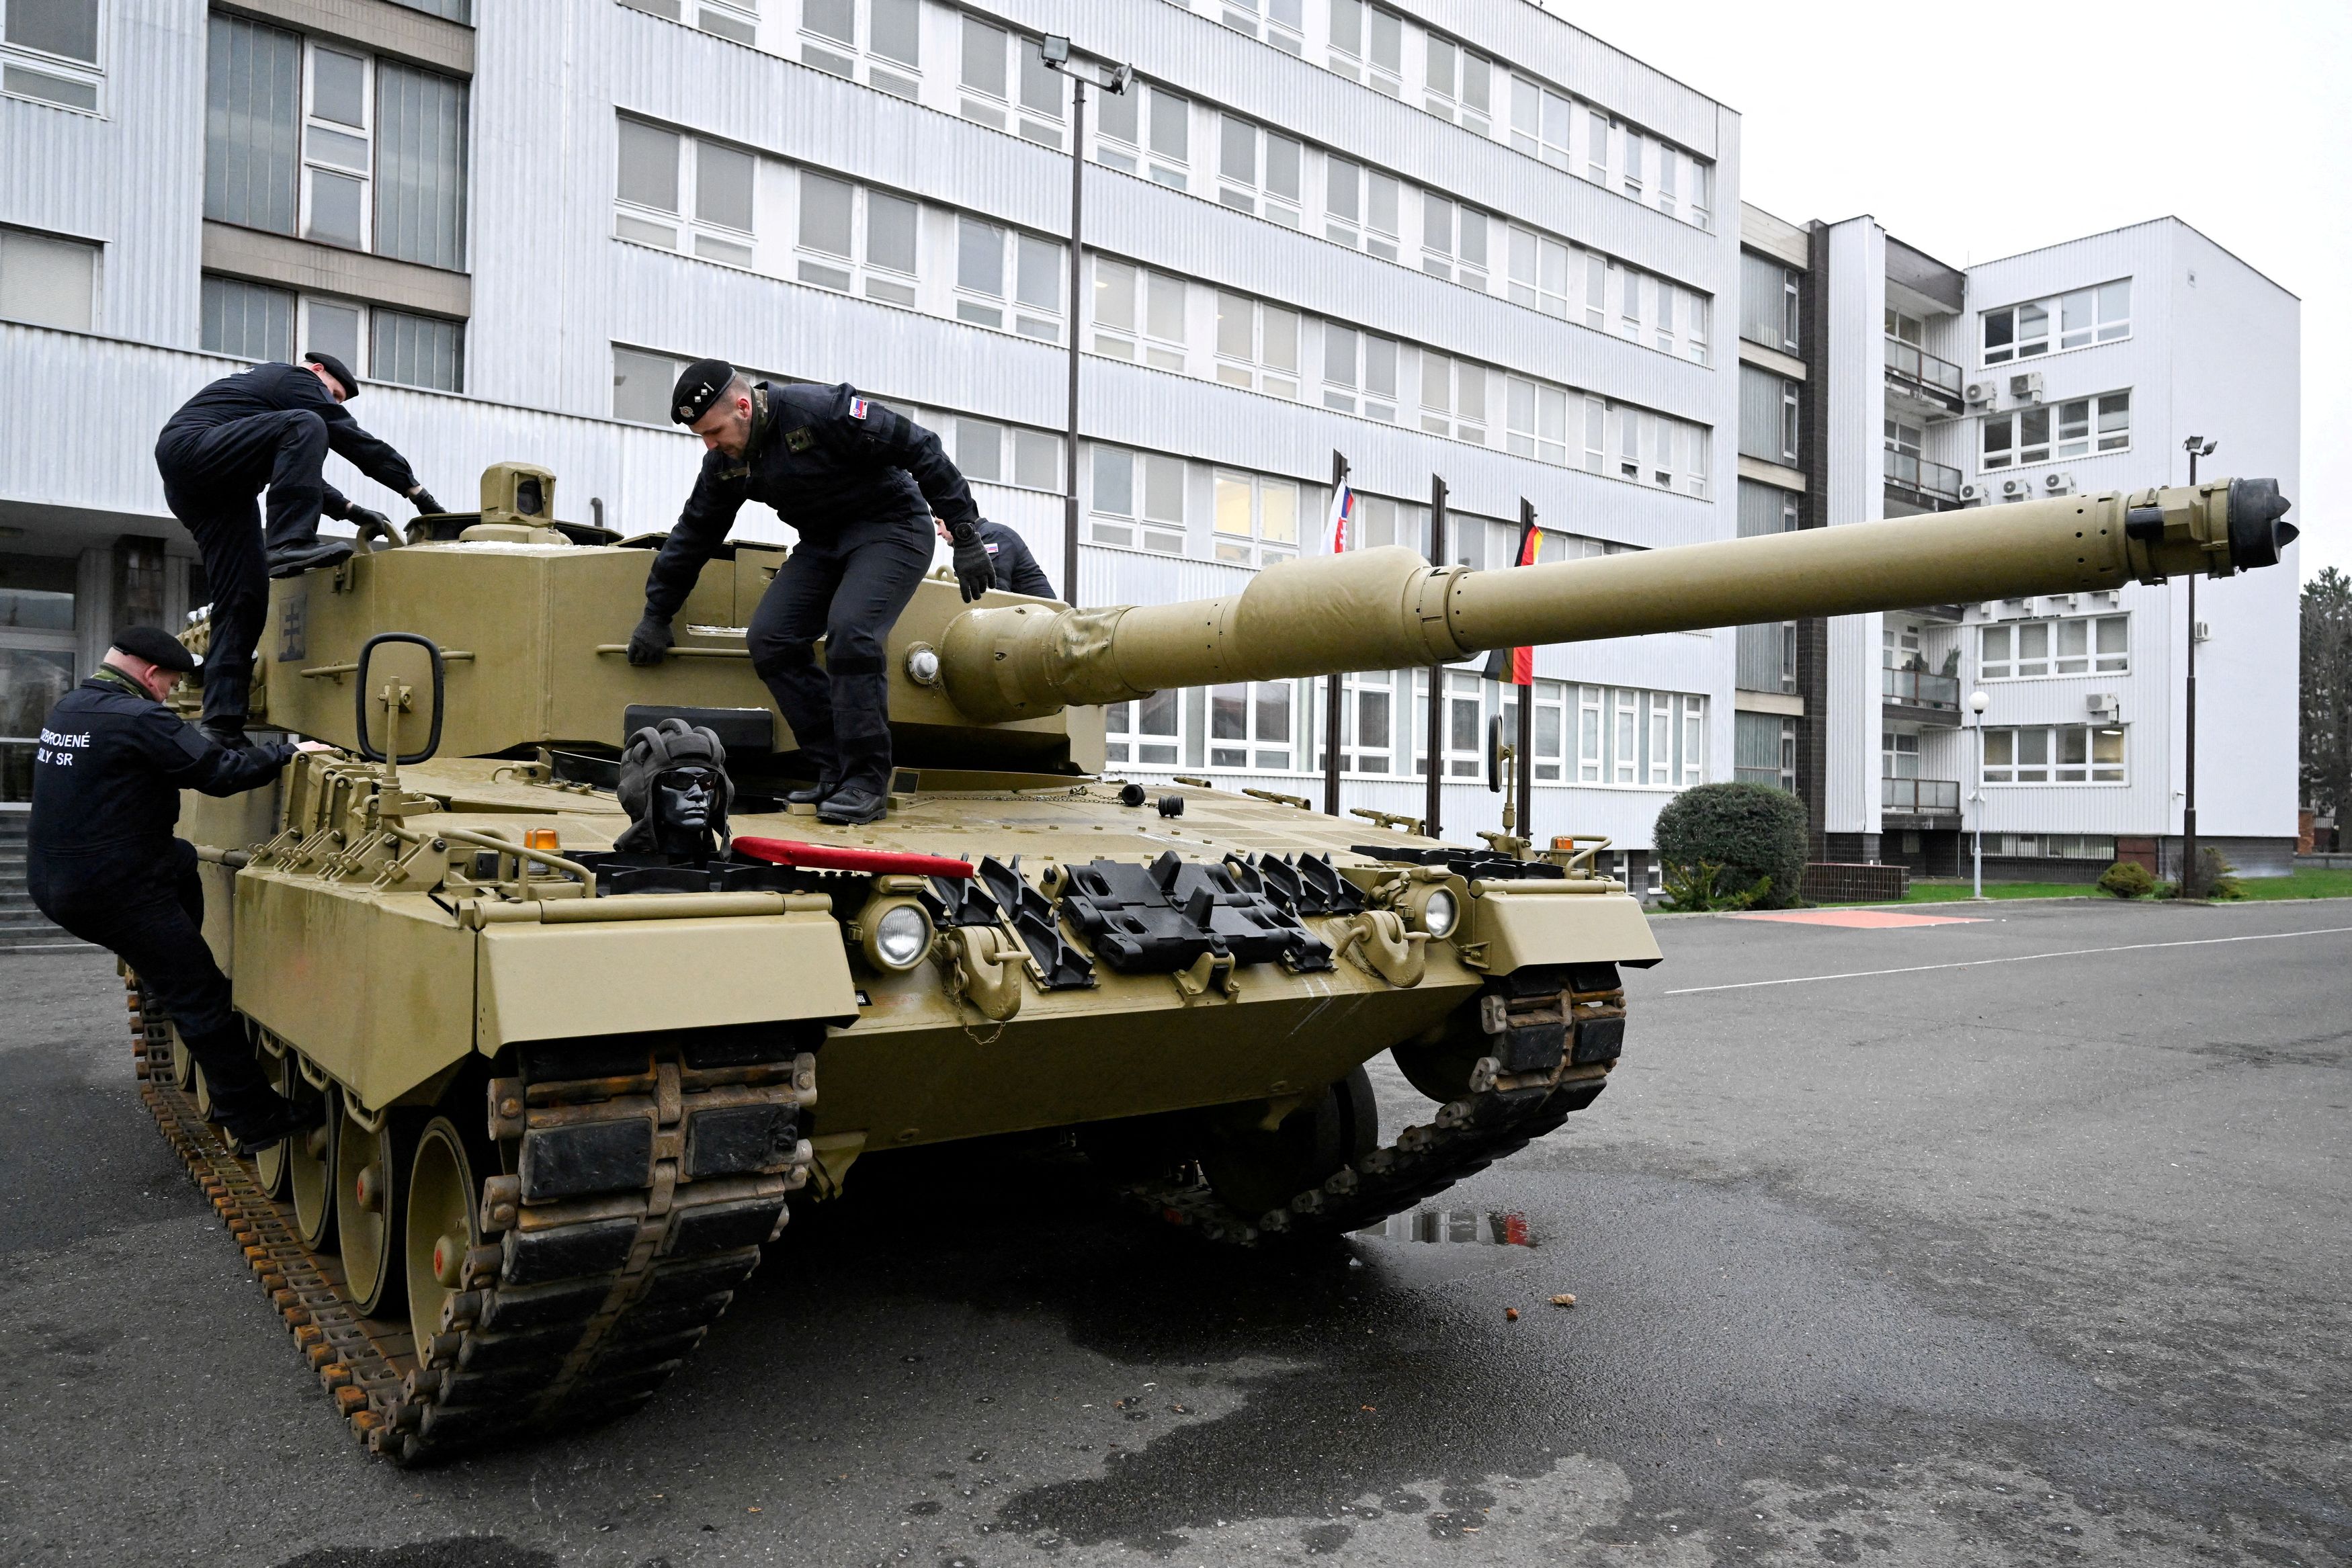 Ουκρανία: Όπλα ναι, βαρέα άρματα μάχης όχι - Η απόφαση στο Ράμσταϊν καθυστερεί την αντεπίθεση του Κιέβου